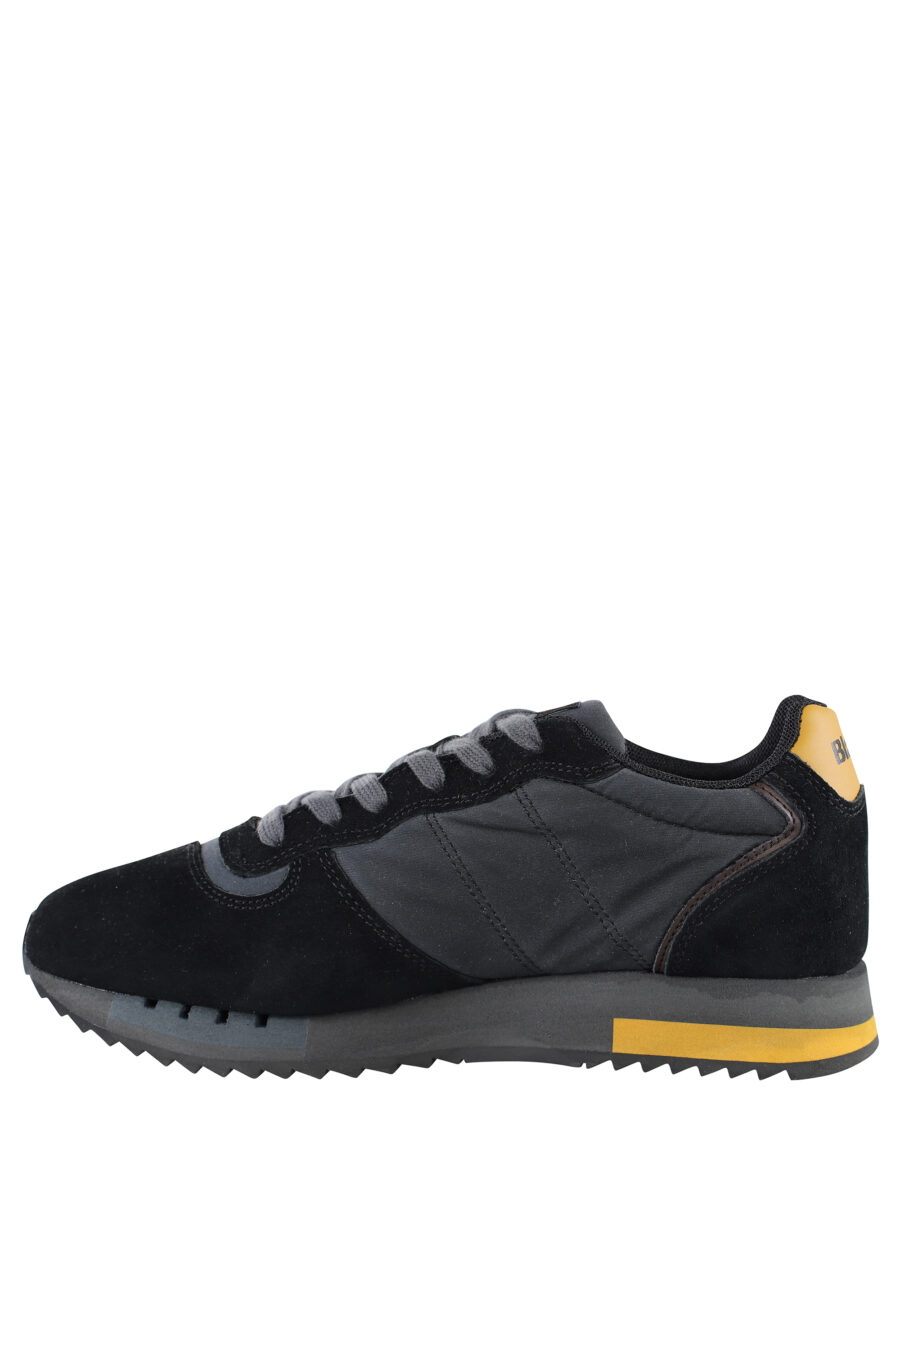 Zapatillas "queen" negras con detalles amarillos y logo - IMG 7086